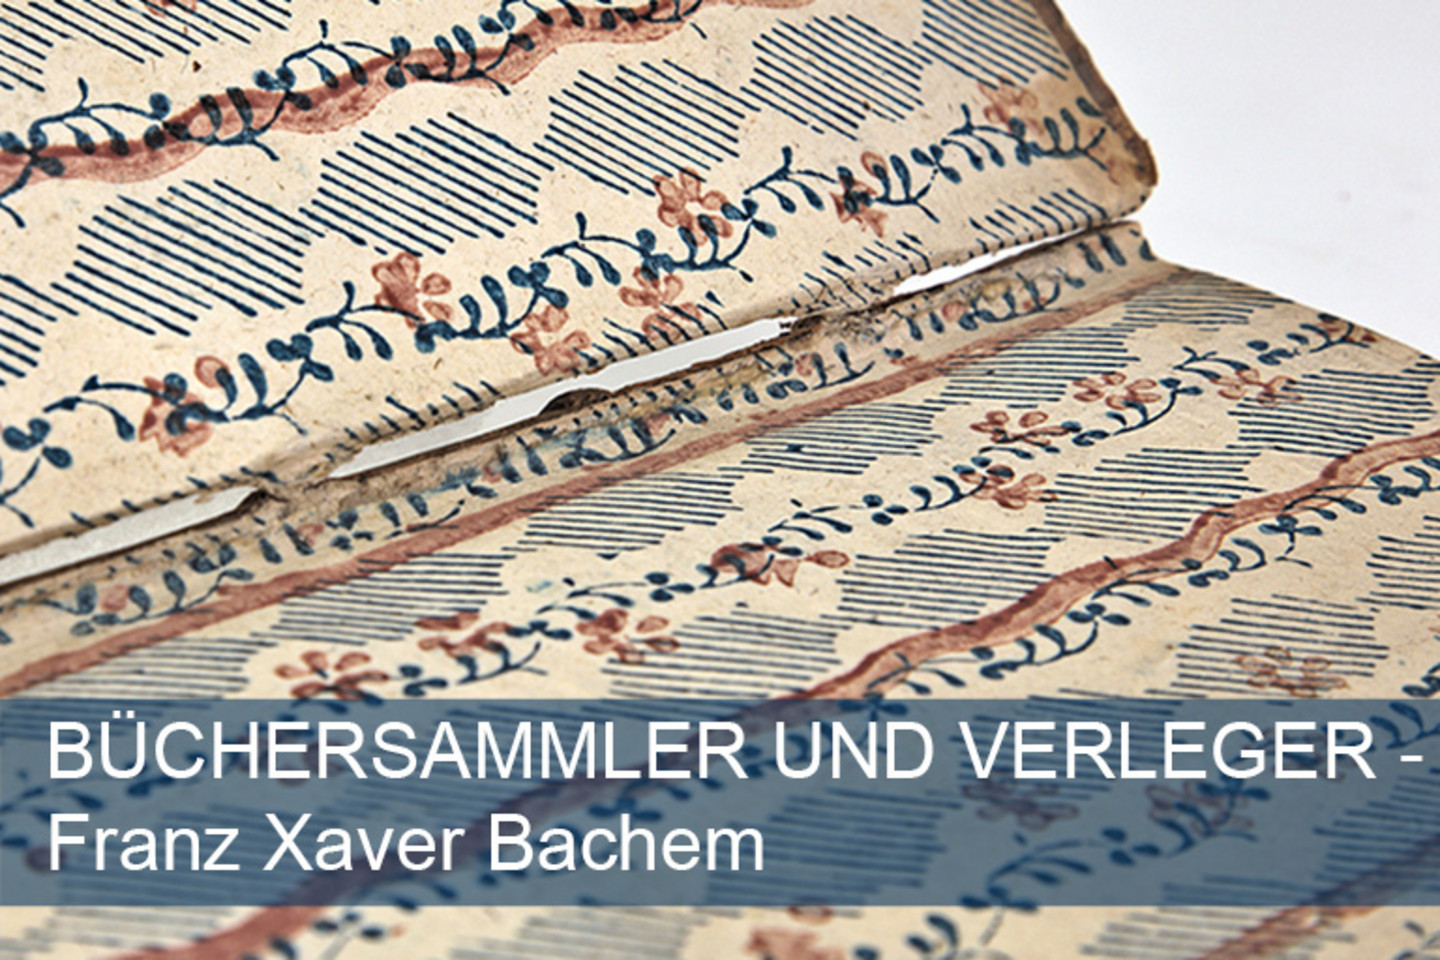 Die verzierte Innenseite eines historischen Buches mit der Aufschrift "Verleger und Büchersammler Franz Xaver Bachem".